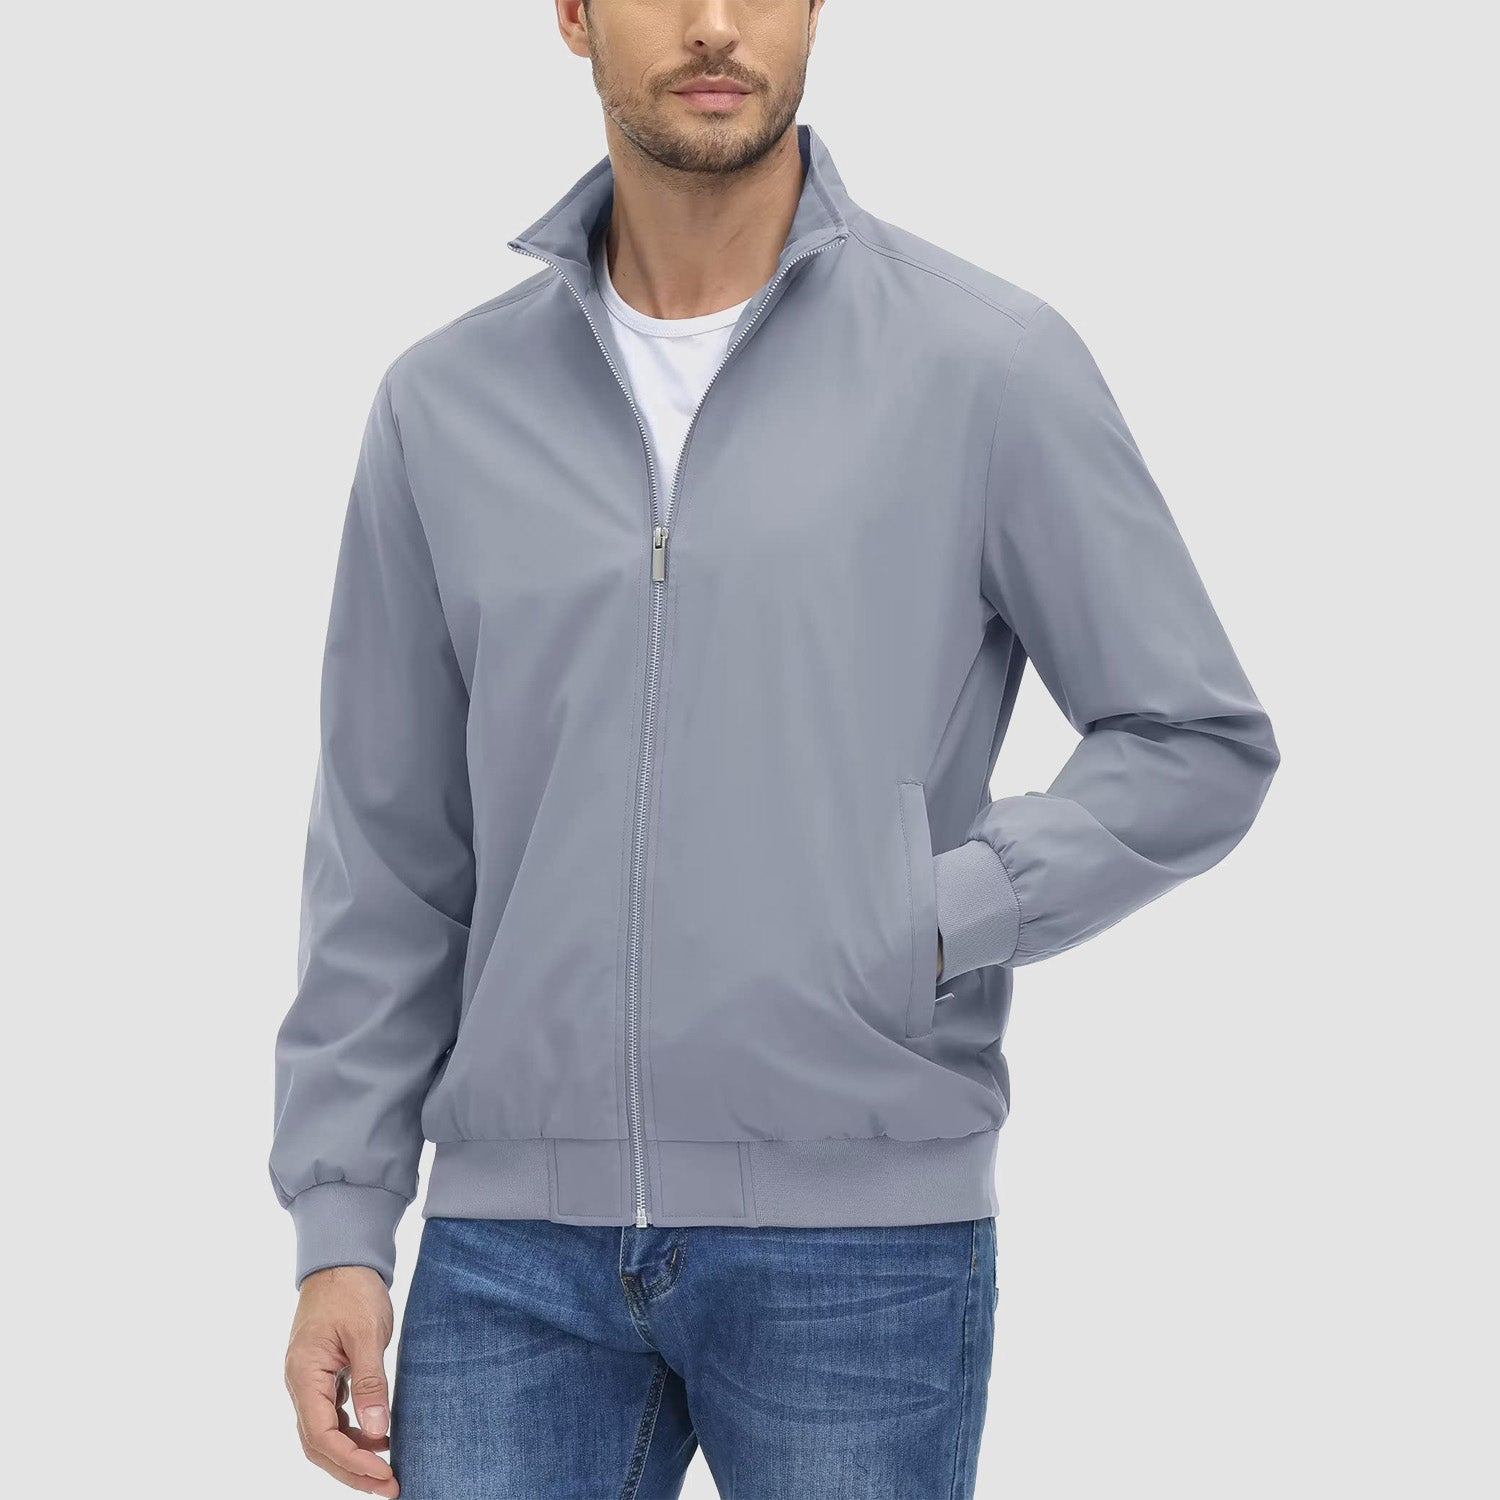 Men's Jacket Stand Collar Lightweight Windproof Outwear